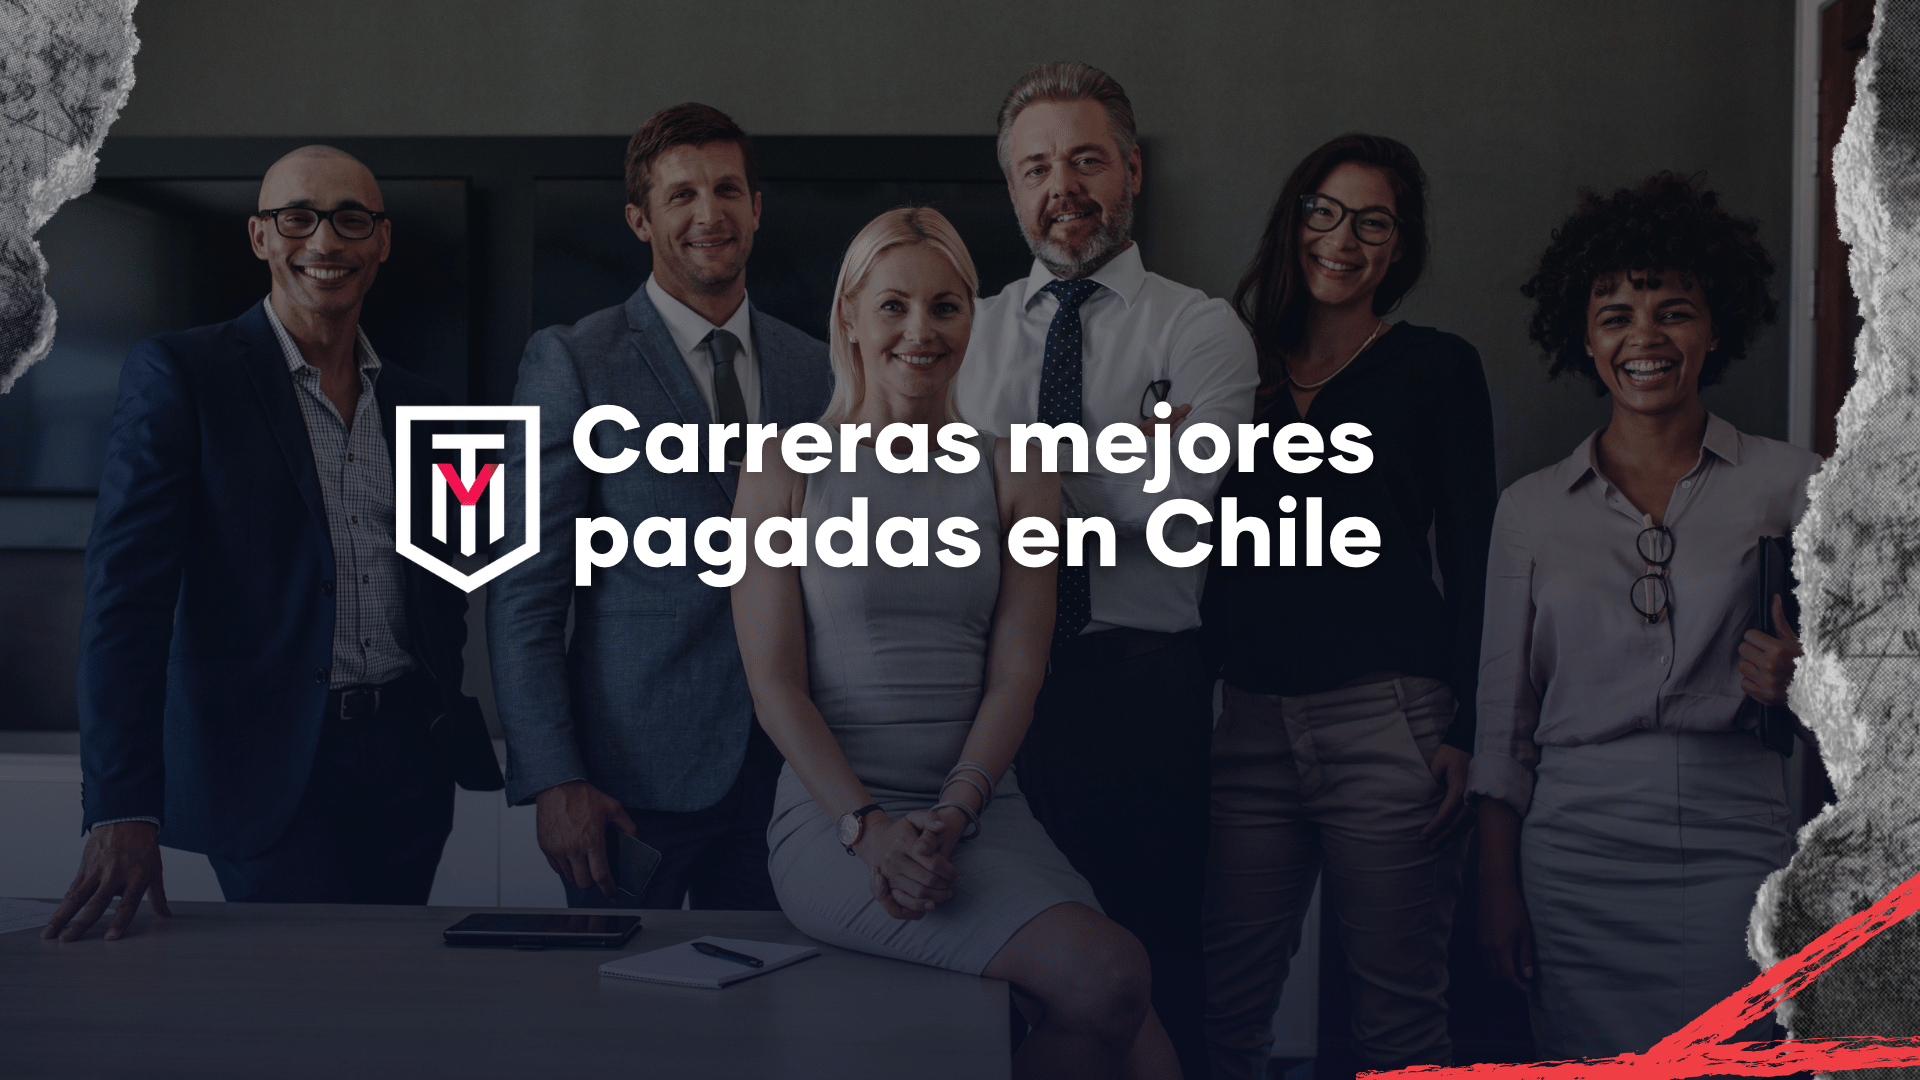 Carreras mejores pagadas en Chile